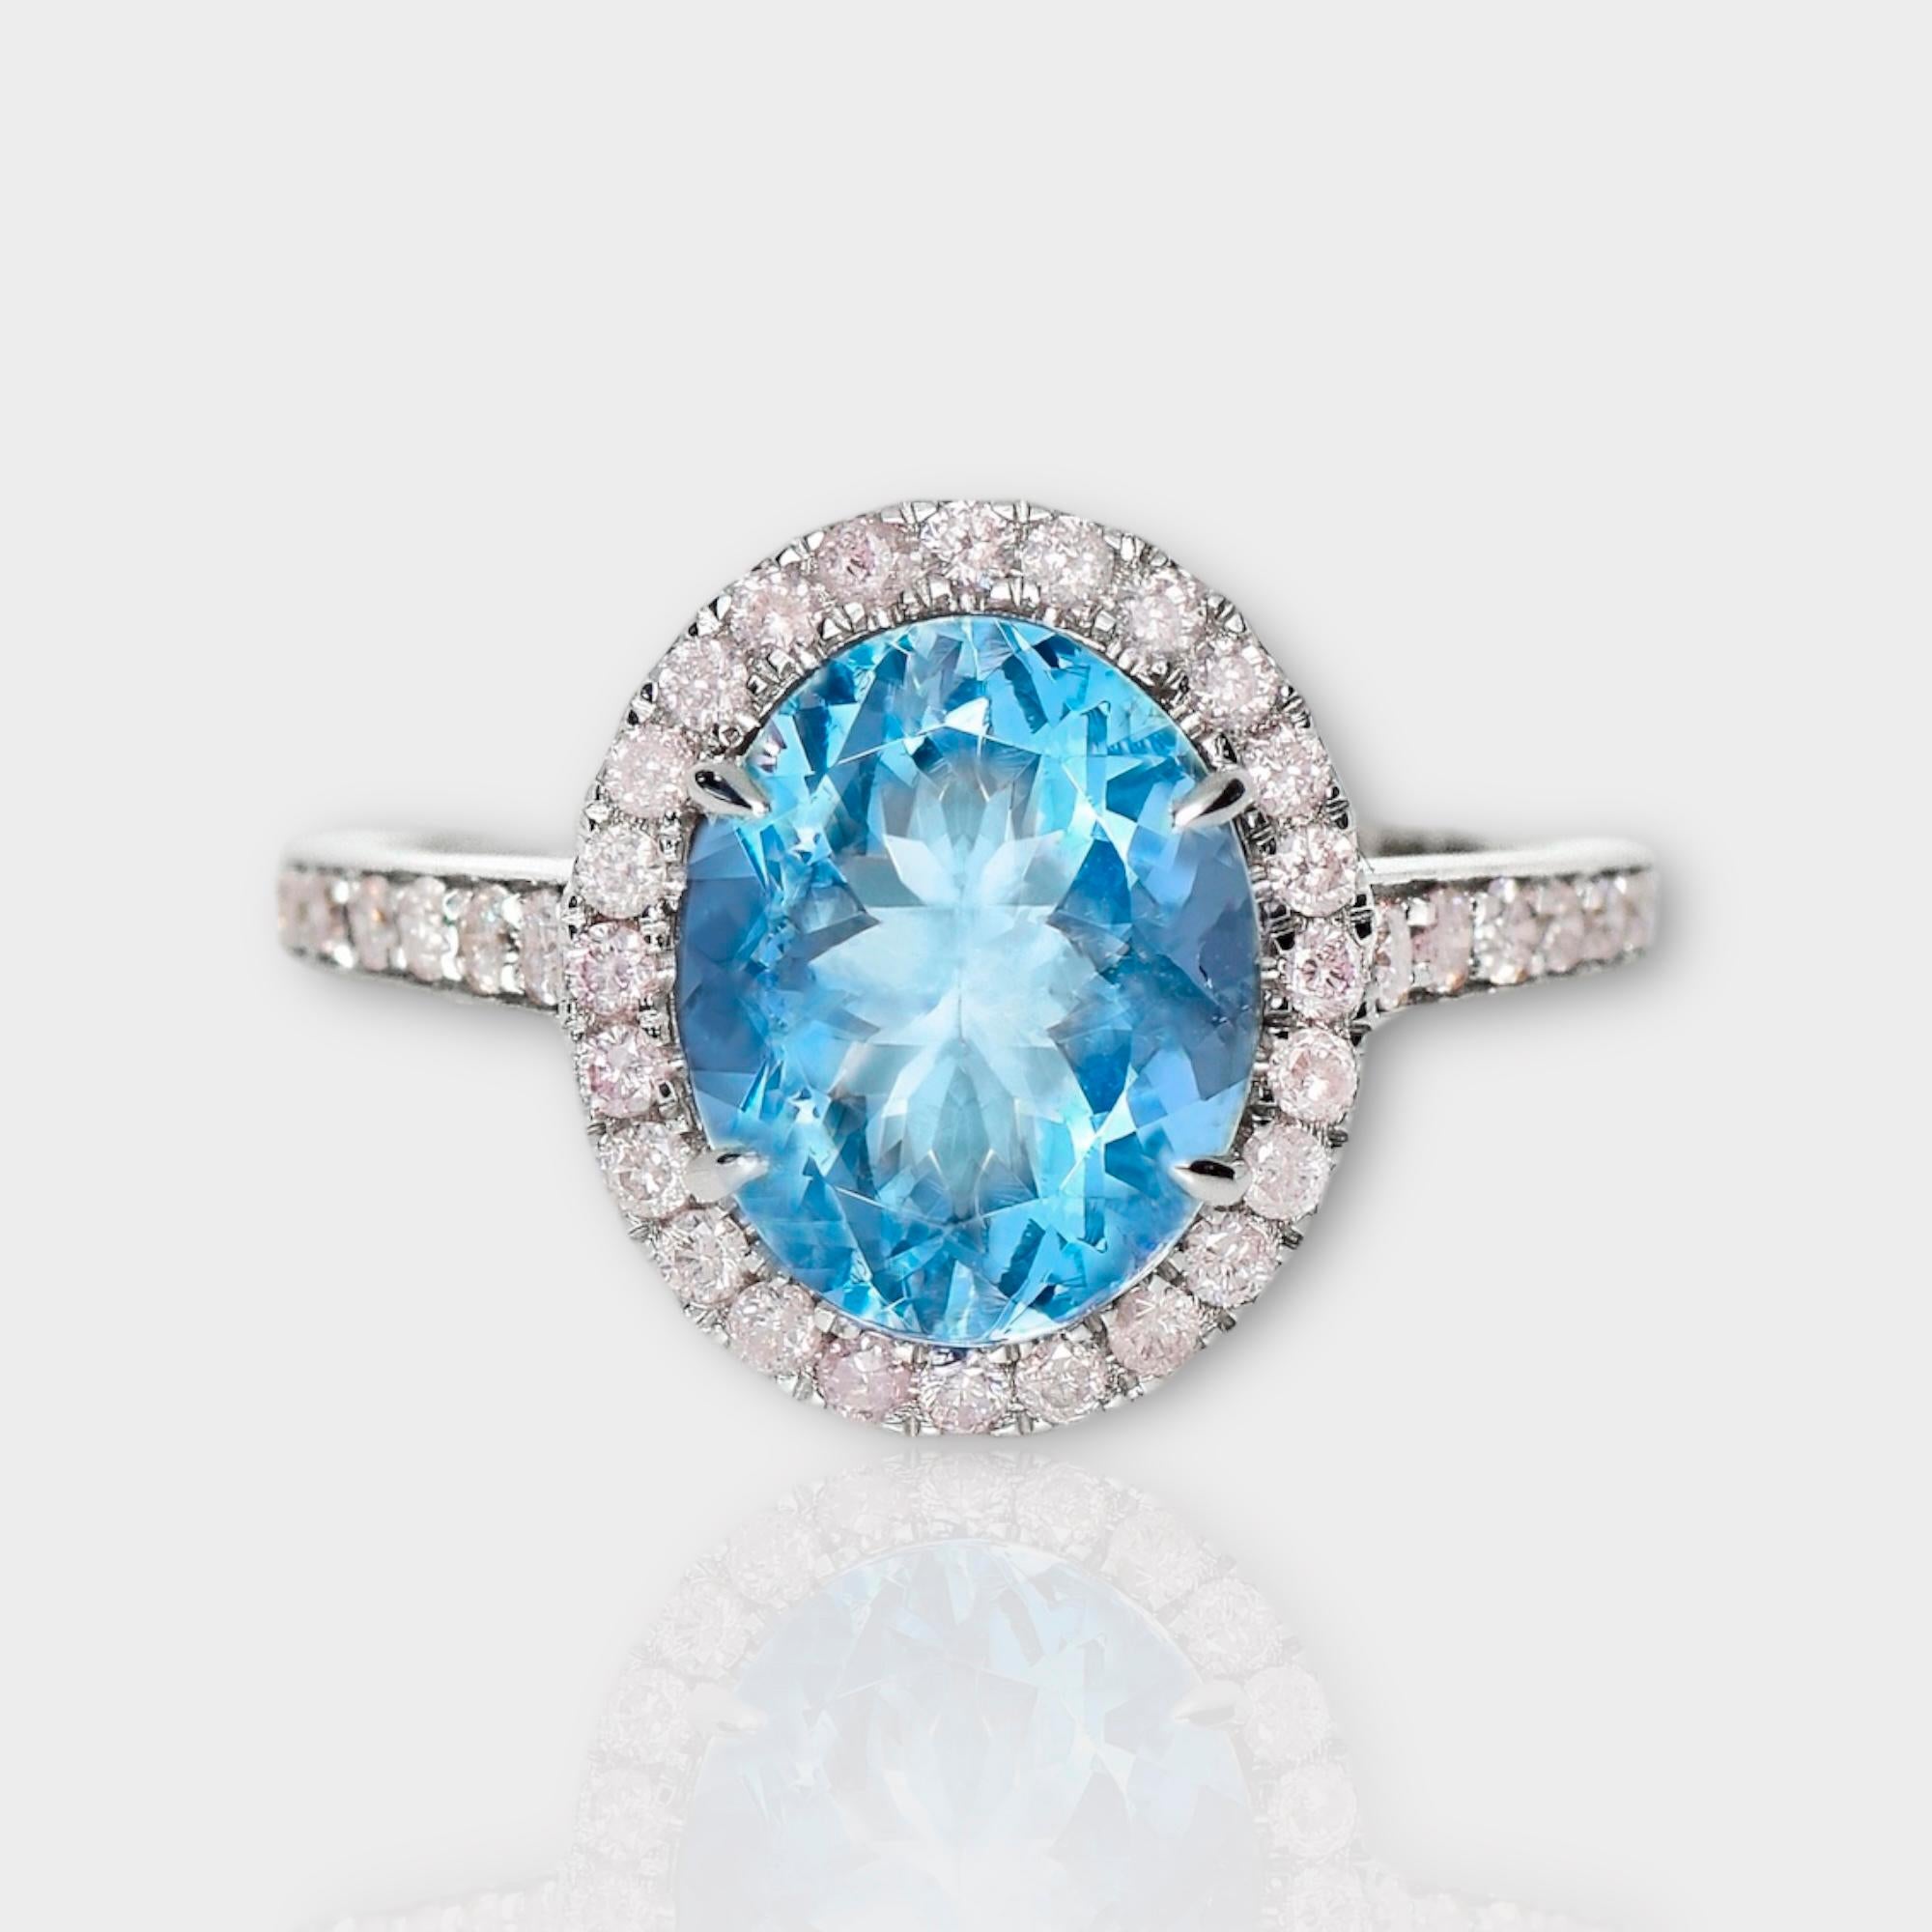 *IGI 14K 2.55 Ct Aquamarine&Pink Diamonds Antique Art Deco Style Engagement Ring* (Bague de fiançailles)

Aigue-marine bleue naturelle pesant 2,55 ct sertie sur un anneau en or blanc 14K avec des diamants roses ronds de taille brillant pesant 0,45